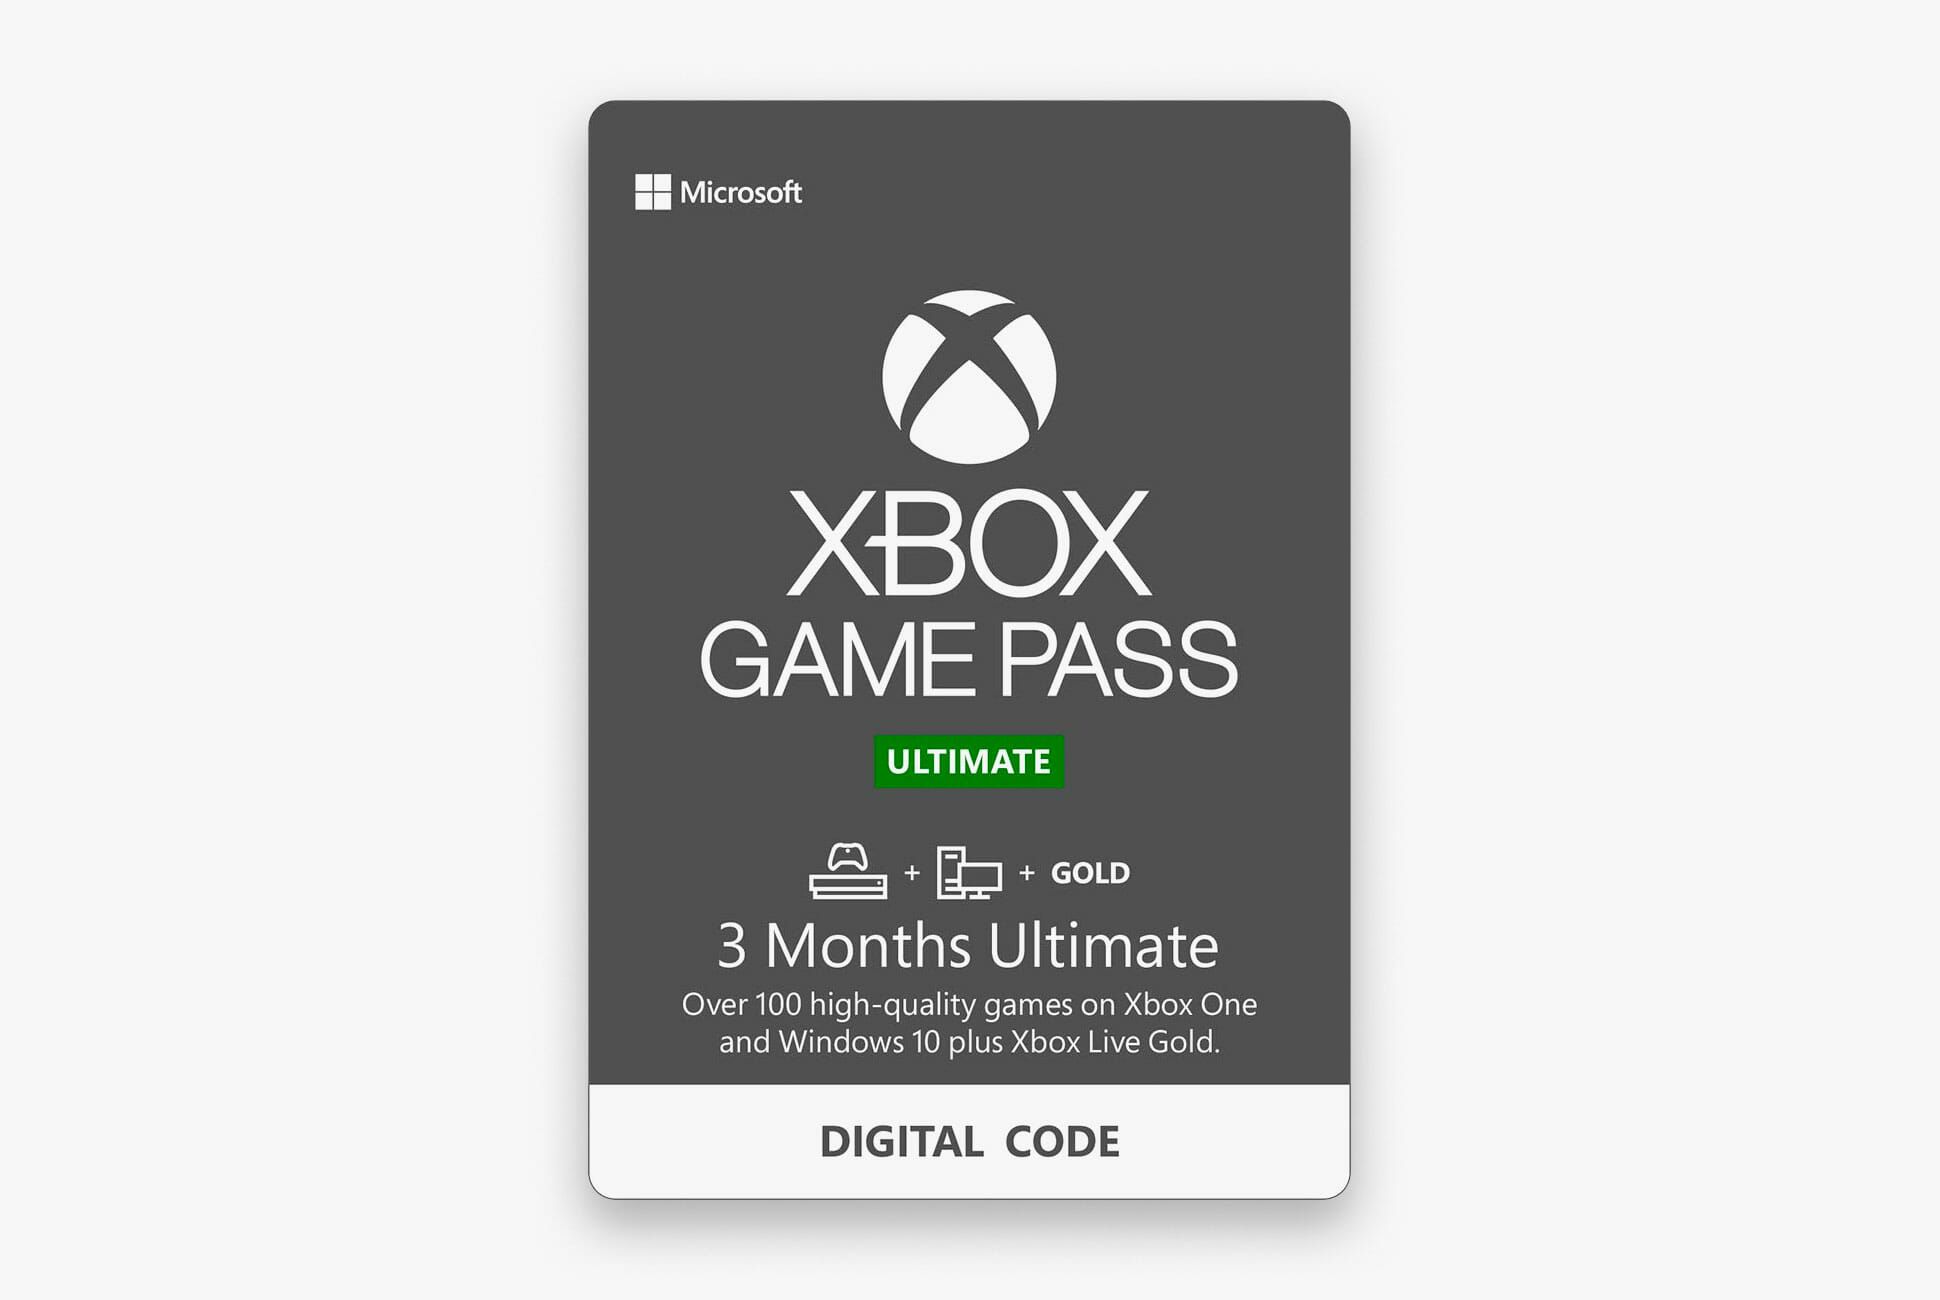 xbox game pass buy